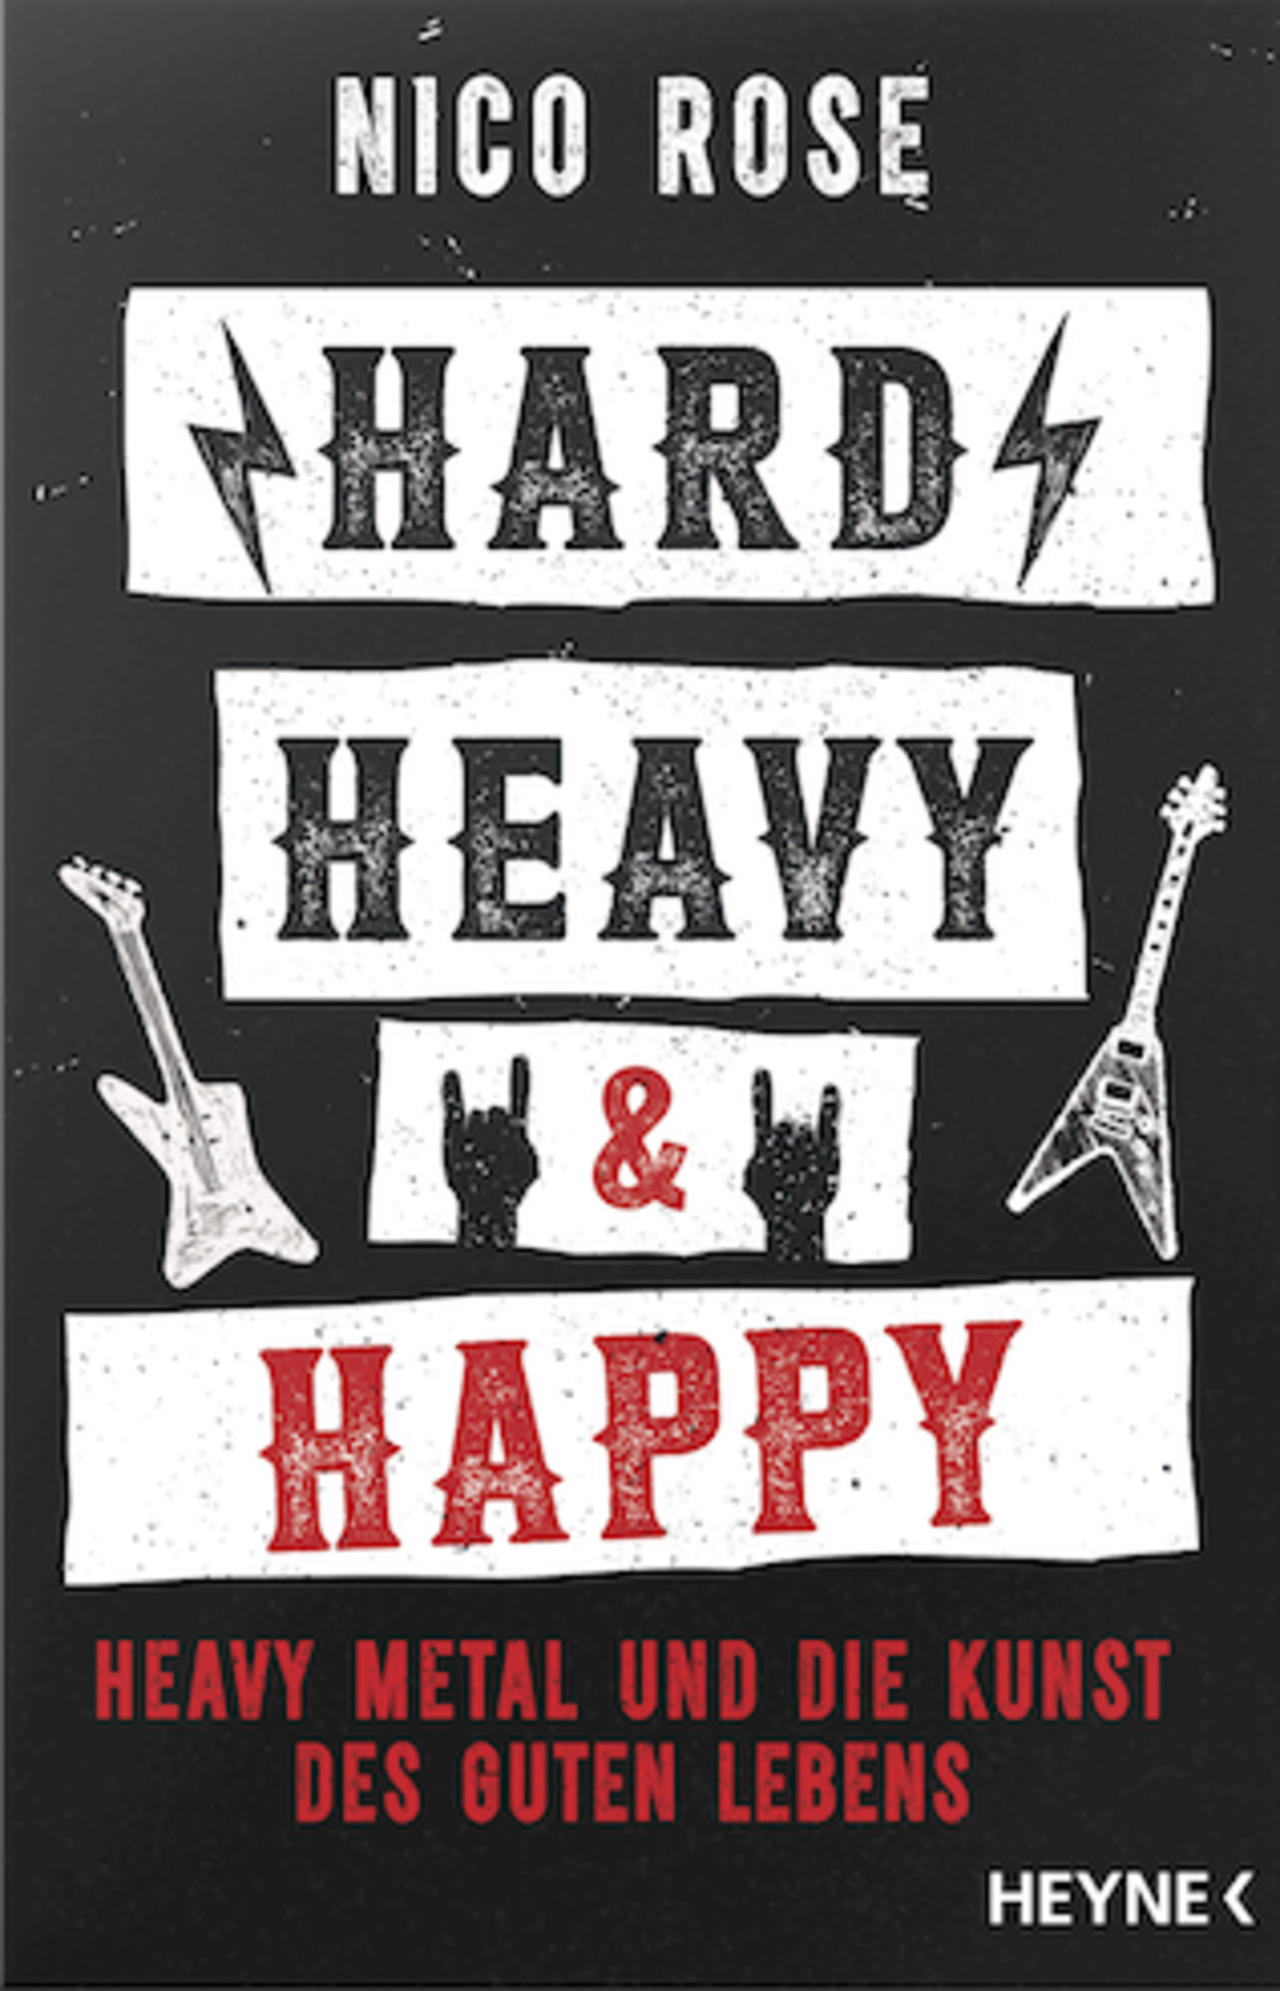 Nico Roses Buch "Hard, Heavy, Happy"